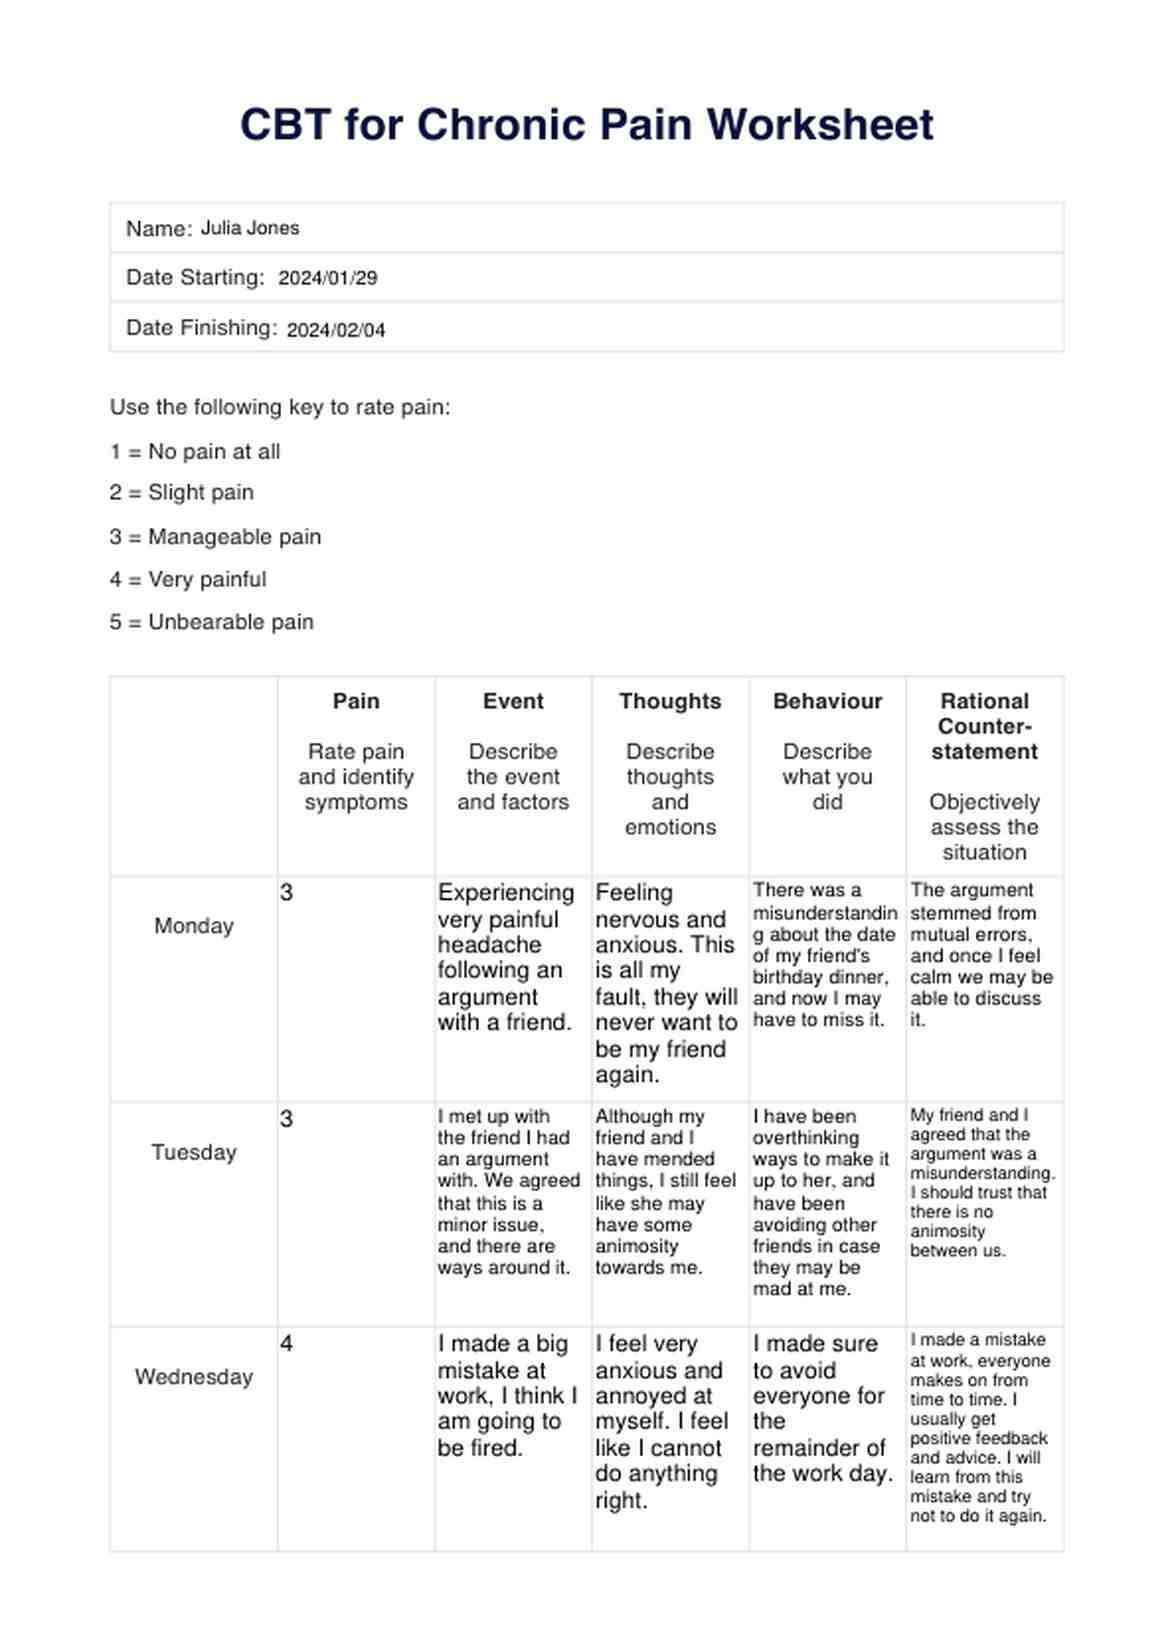 CBT for Chronic Pain Worksheet PDF Example